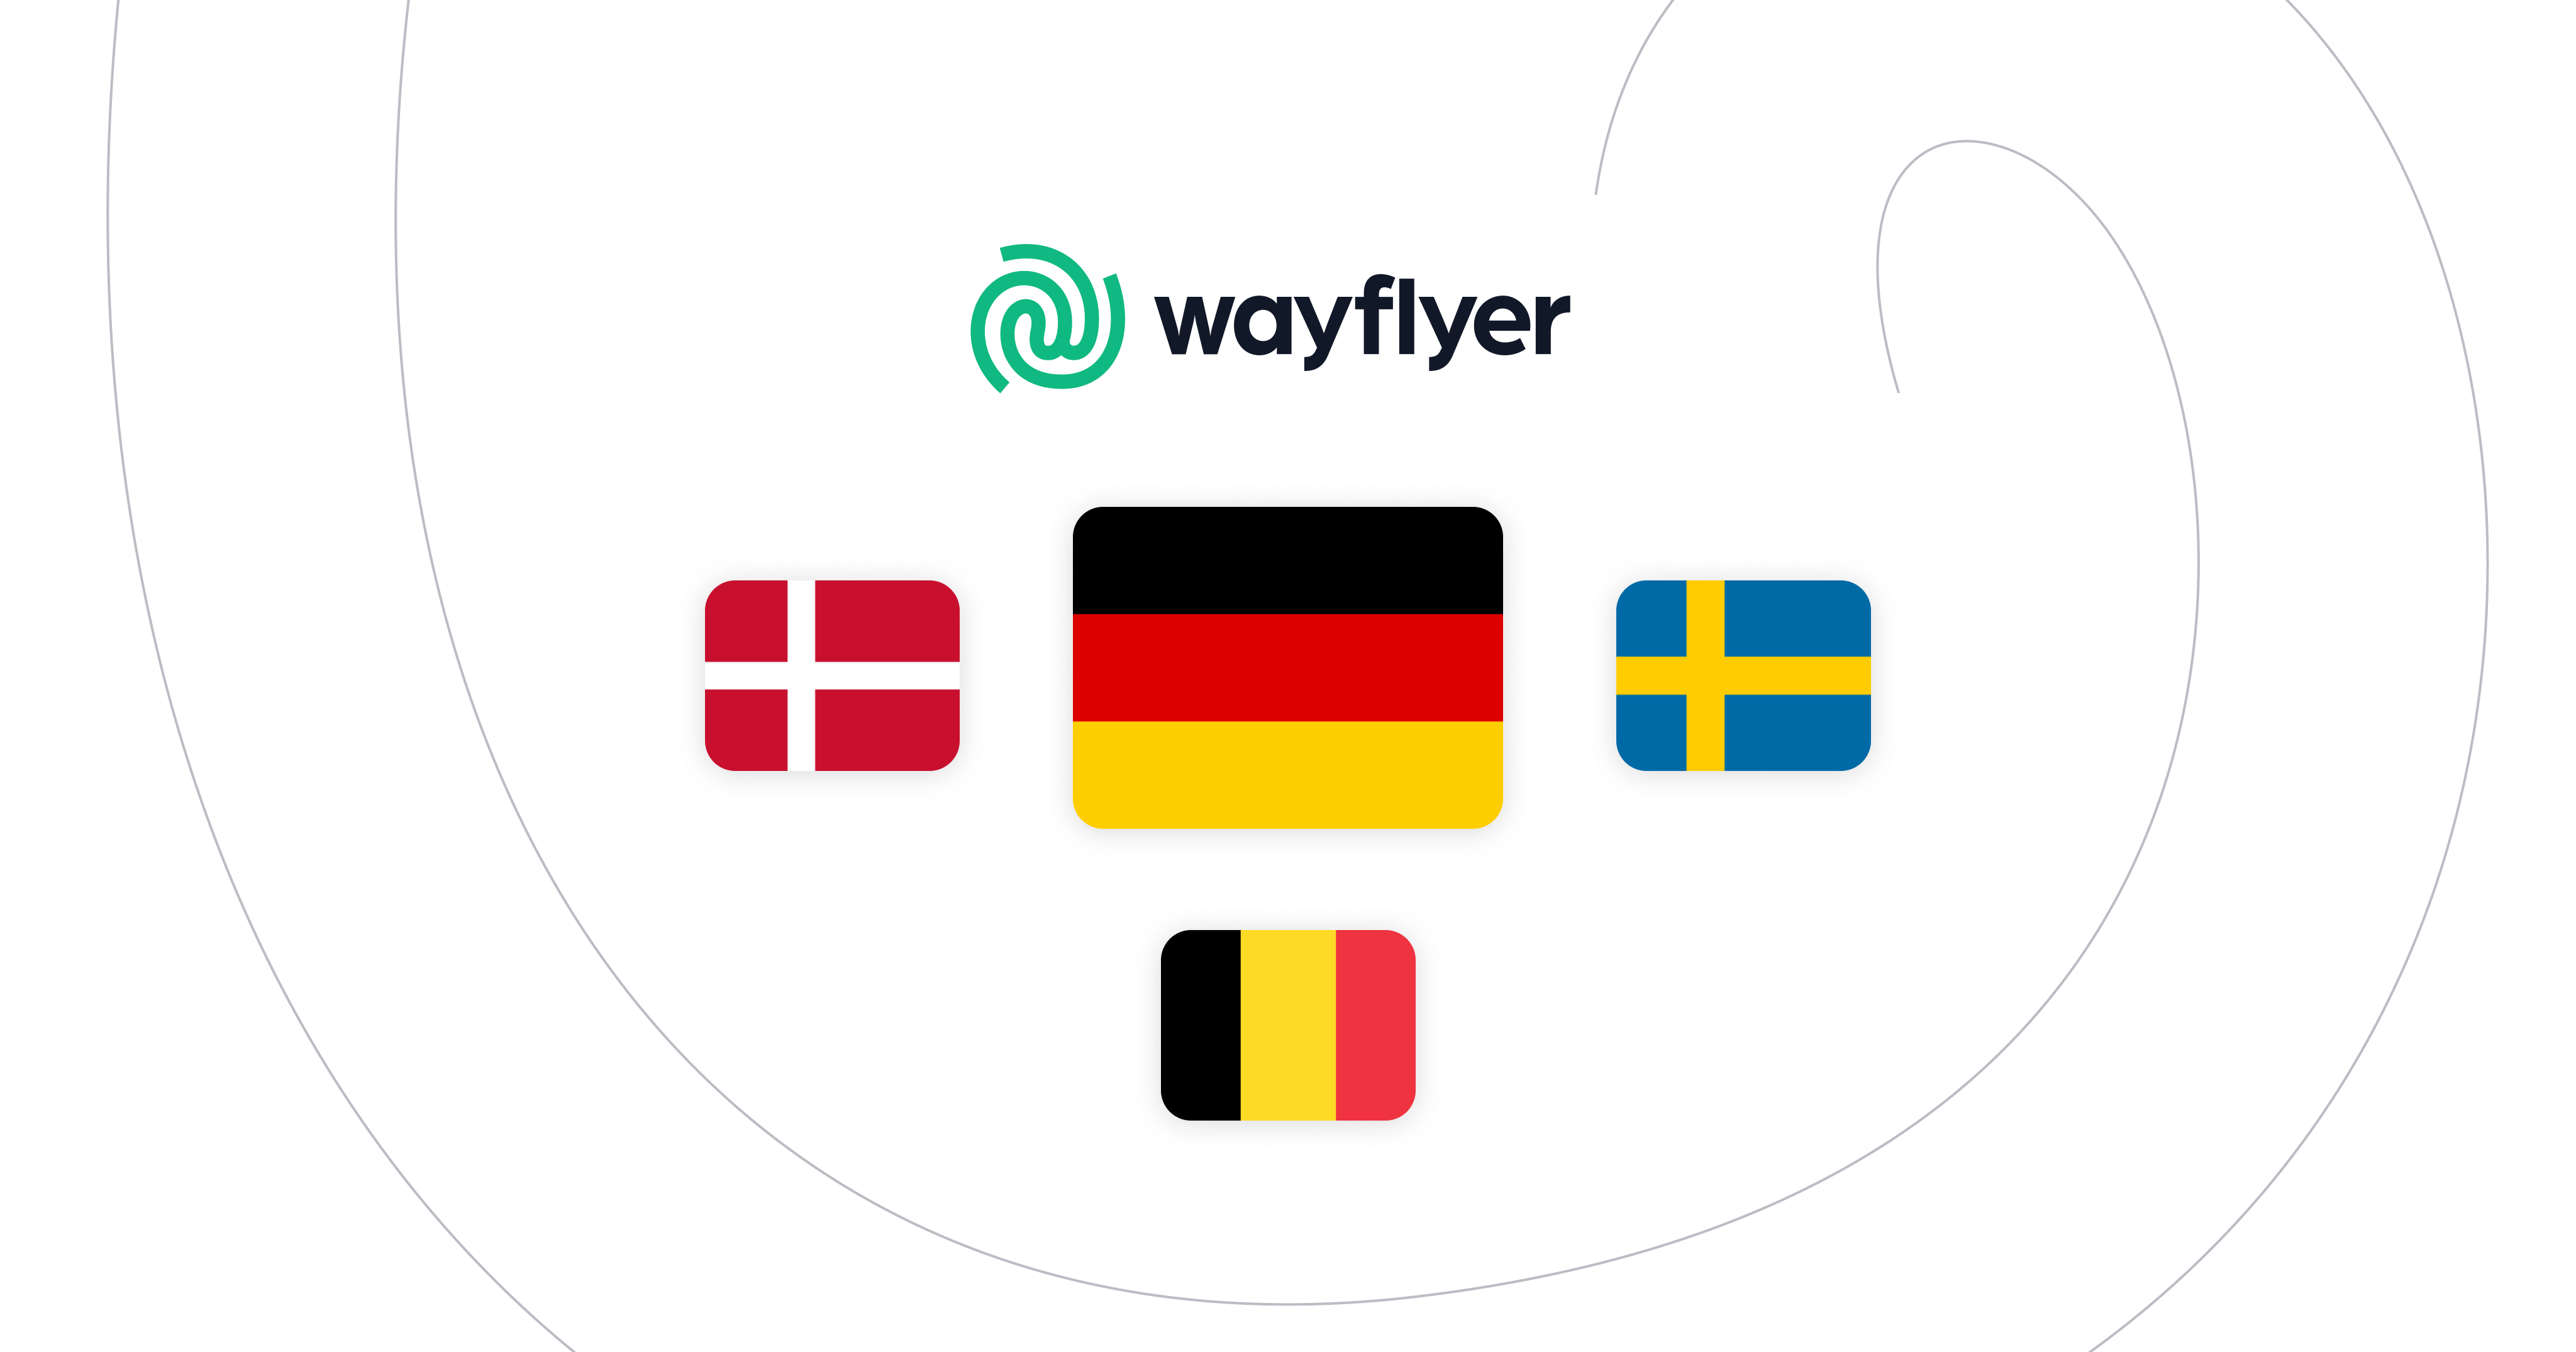 Aankondiging van onze uitbreiding in Duitsland, Zweden, België en Denemarken